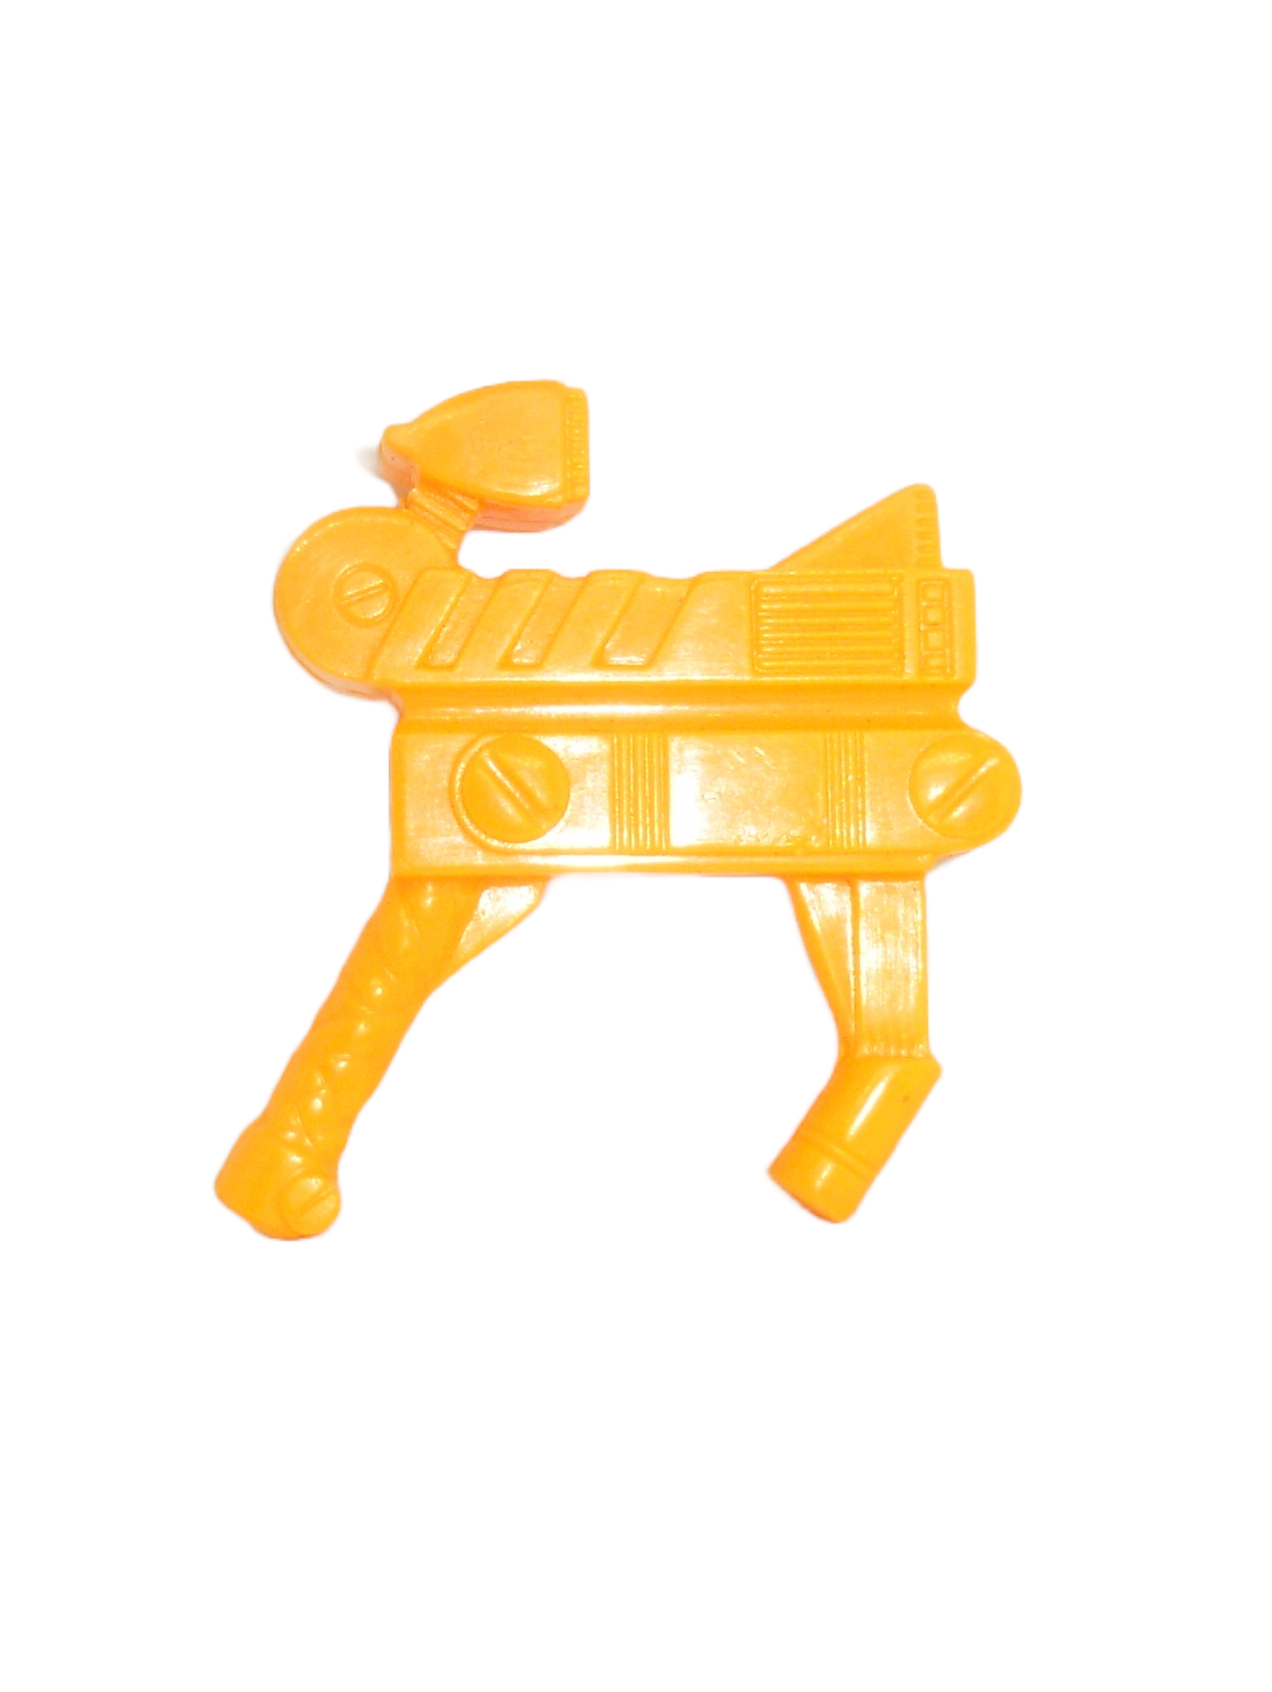 Trollbot Troll orange weapon / blaster